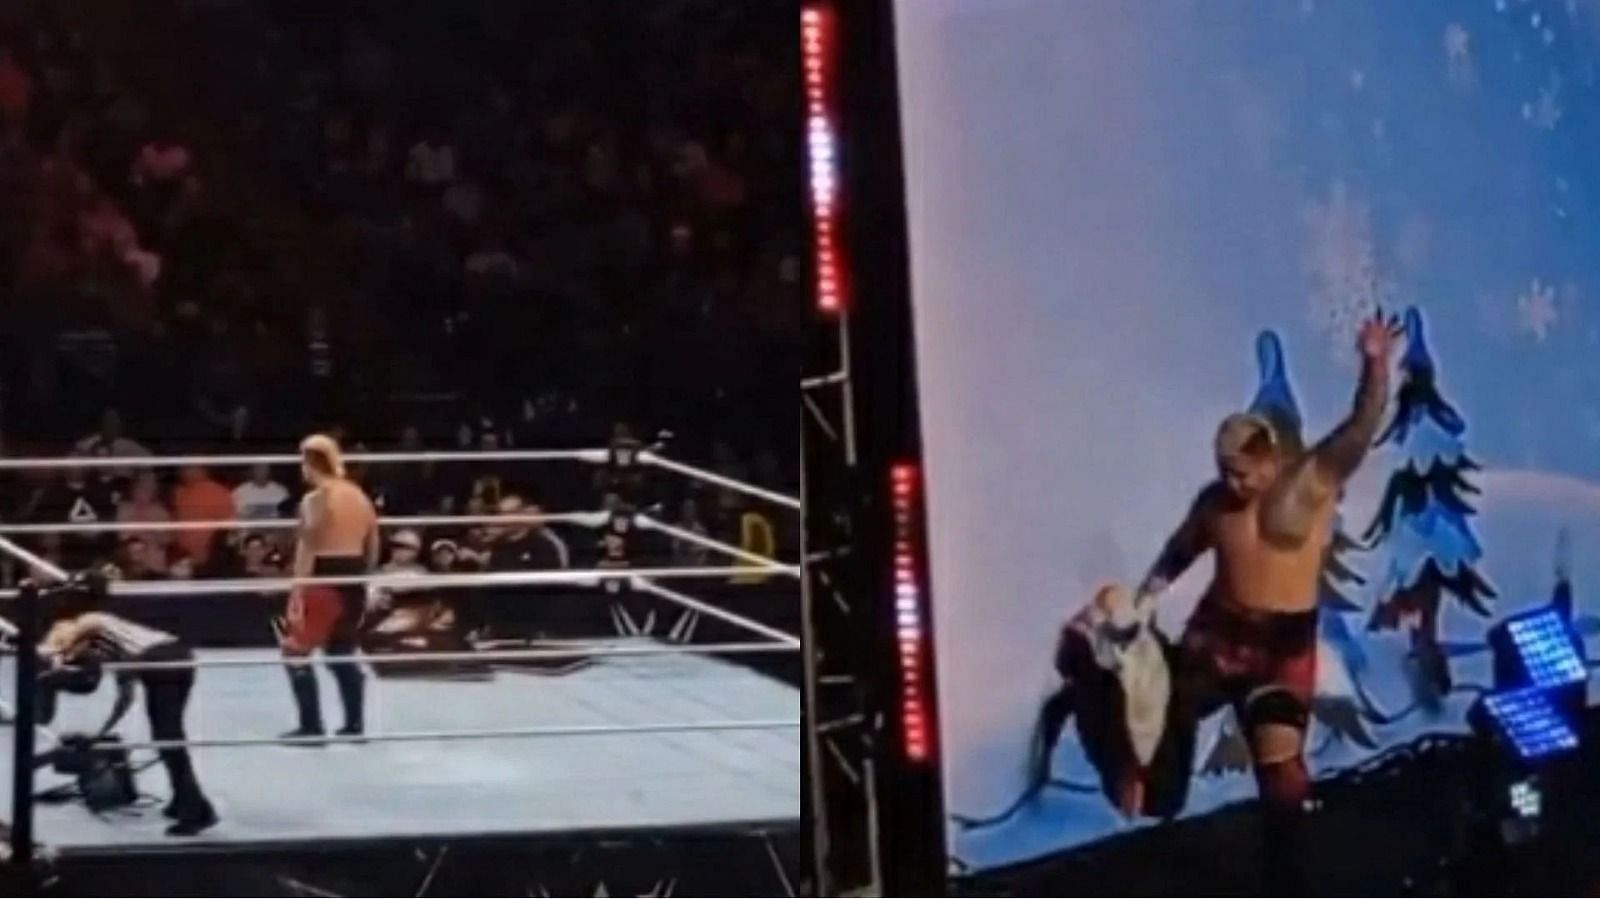 WWE स्टार सोलो सिकोआ को केविन ओवेंस के खिलाफ हार का सामना करना पड़ा है